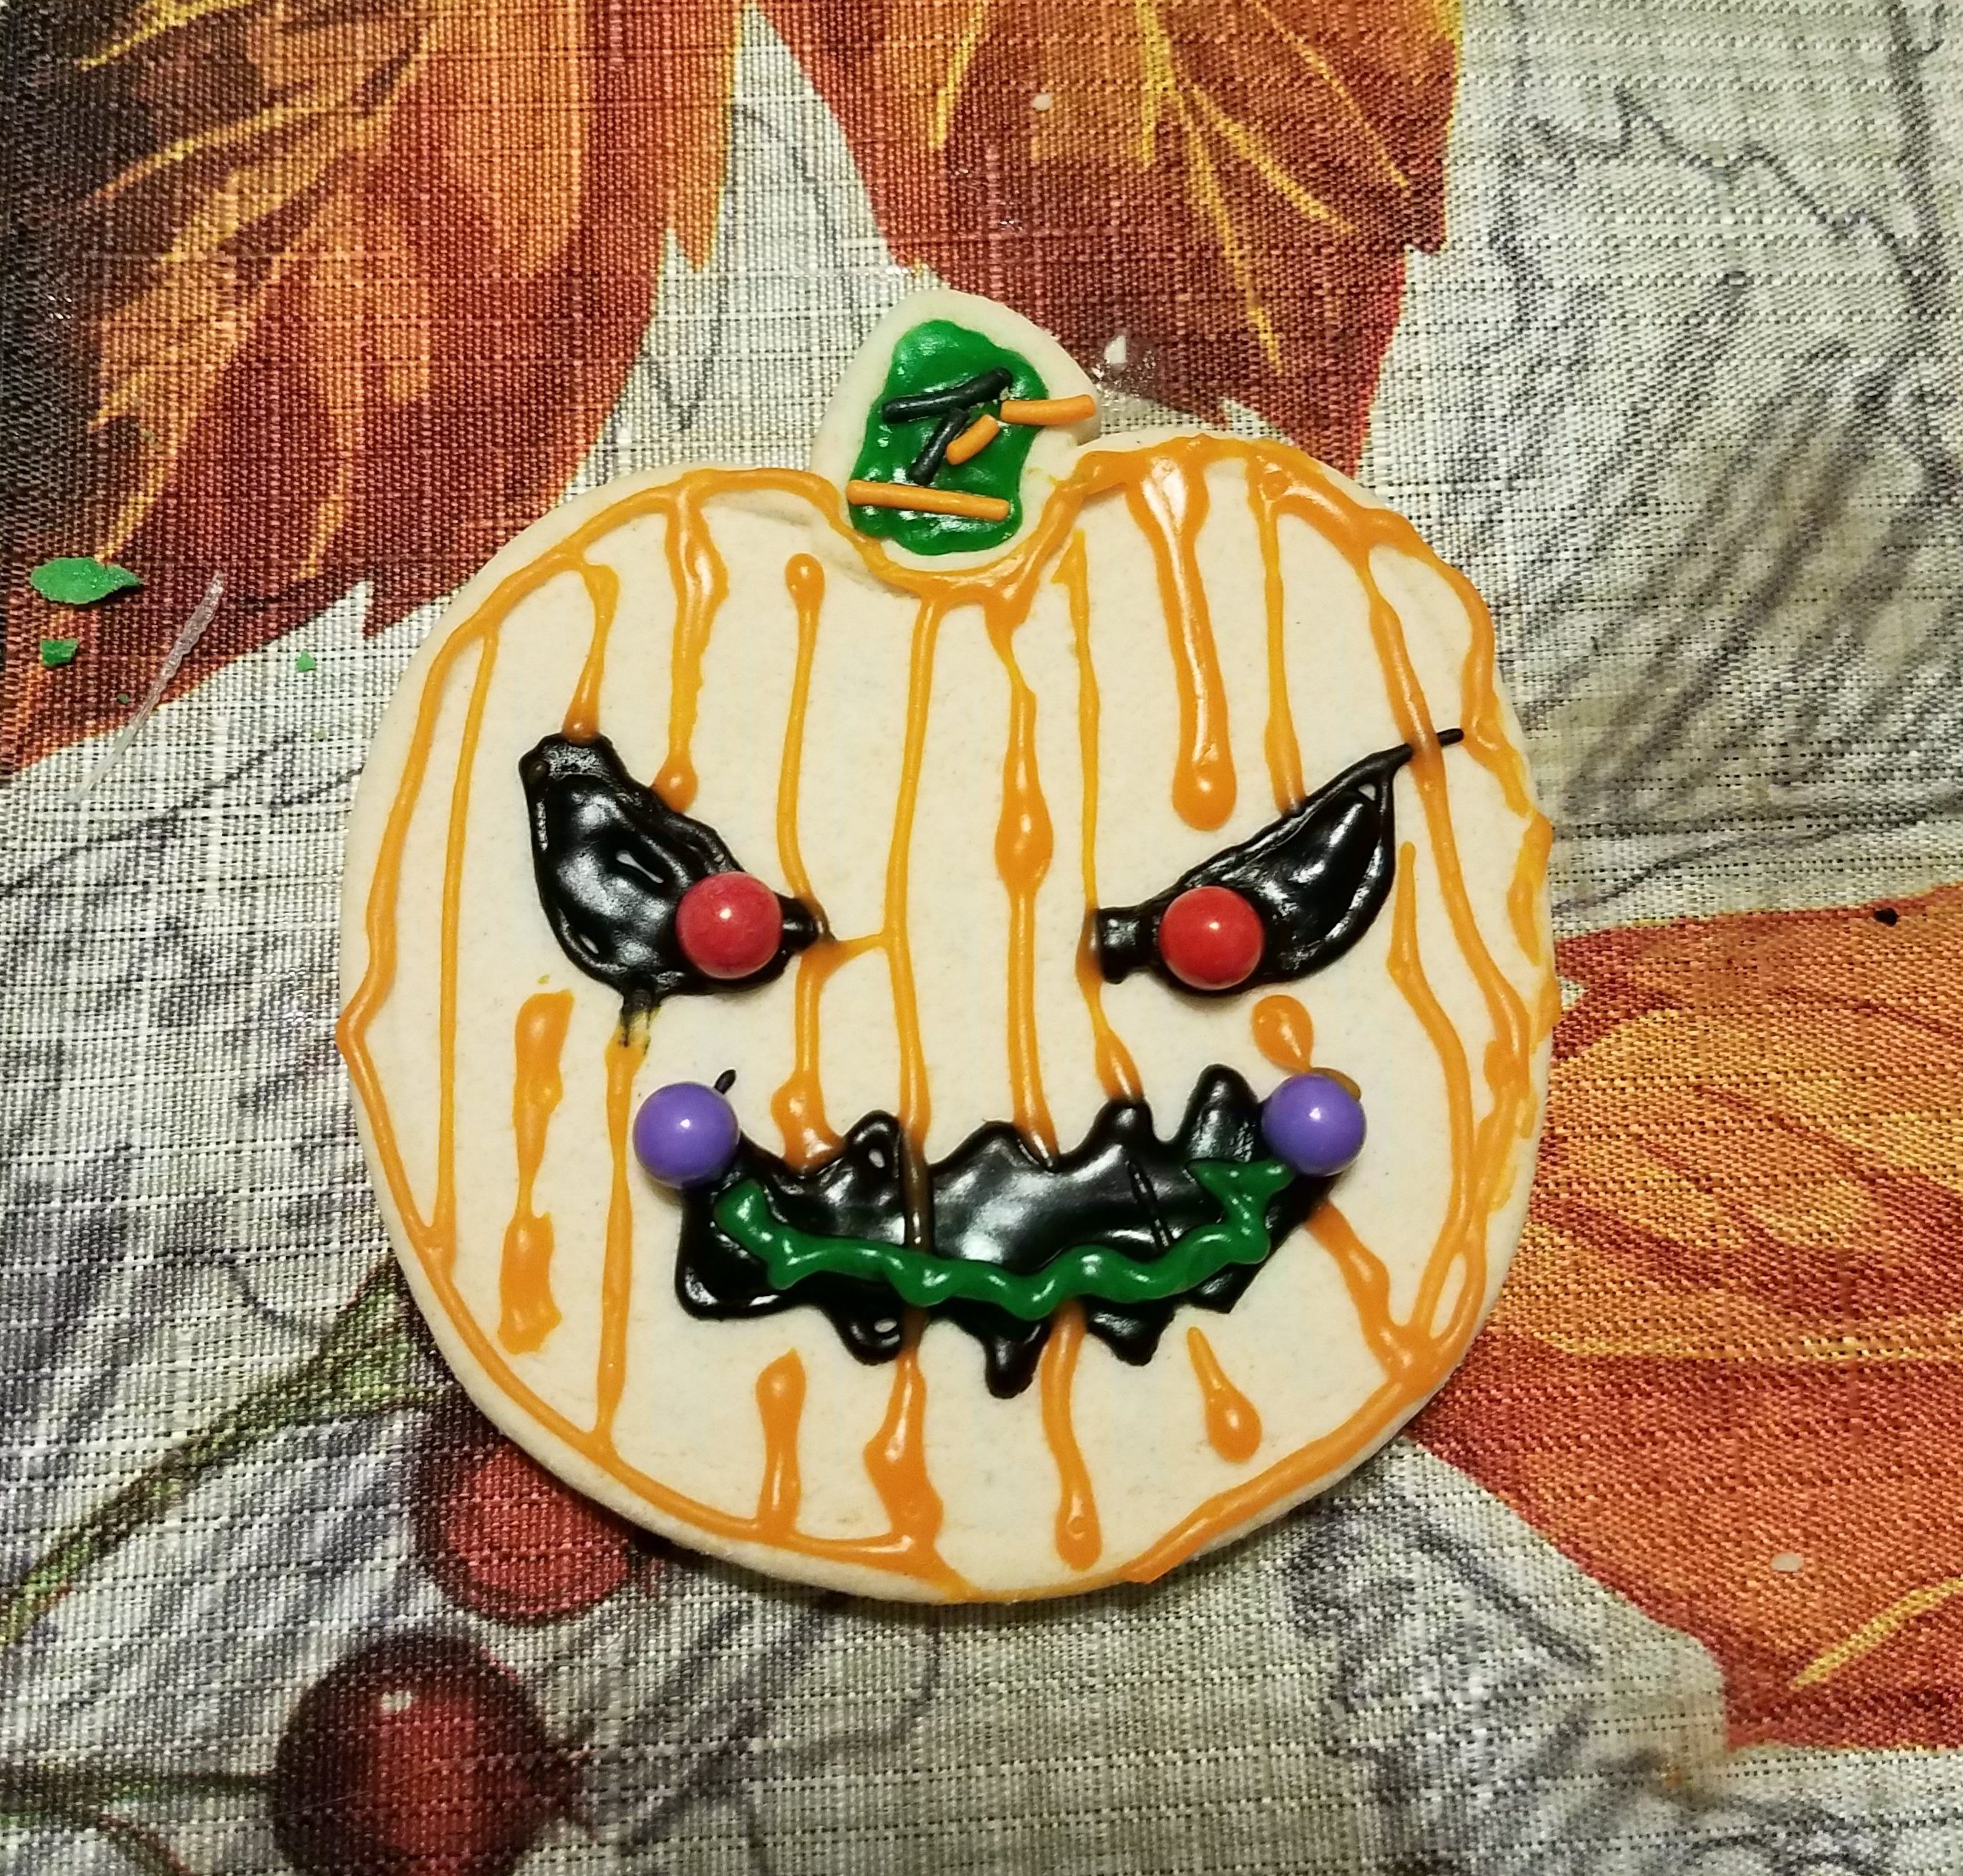 Halloween Cookie Decorating!